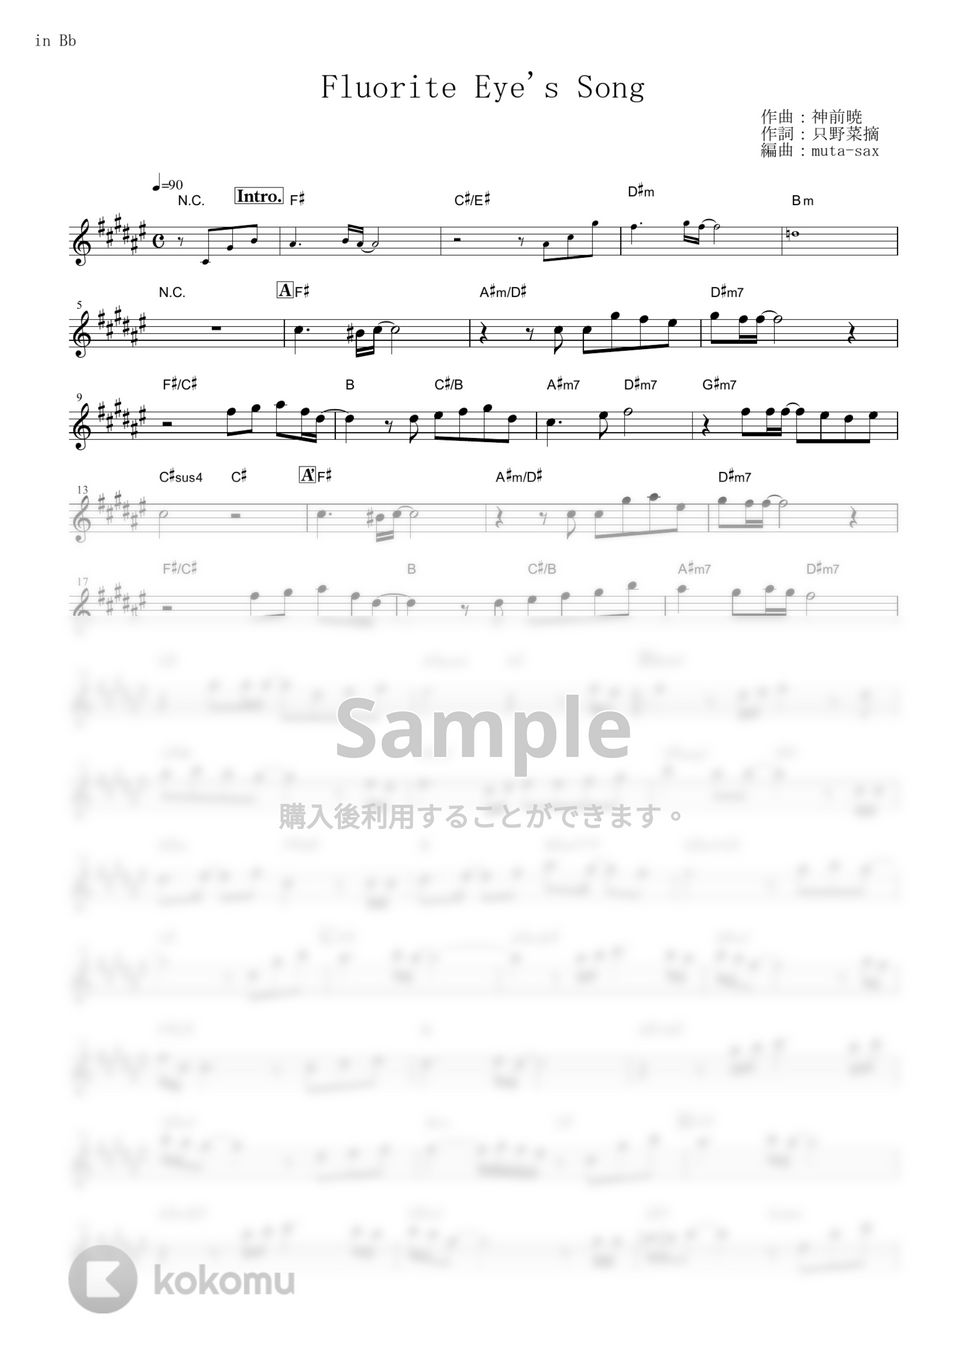 ヴィヴィ（Vo.八木海莉） - Fluorite Eye's Song (『Vivy -Fluorite Eye’s Song-』 / in Bb) by muta-sax